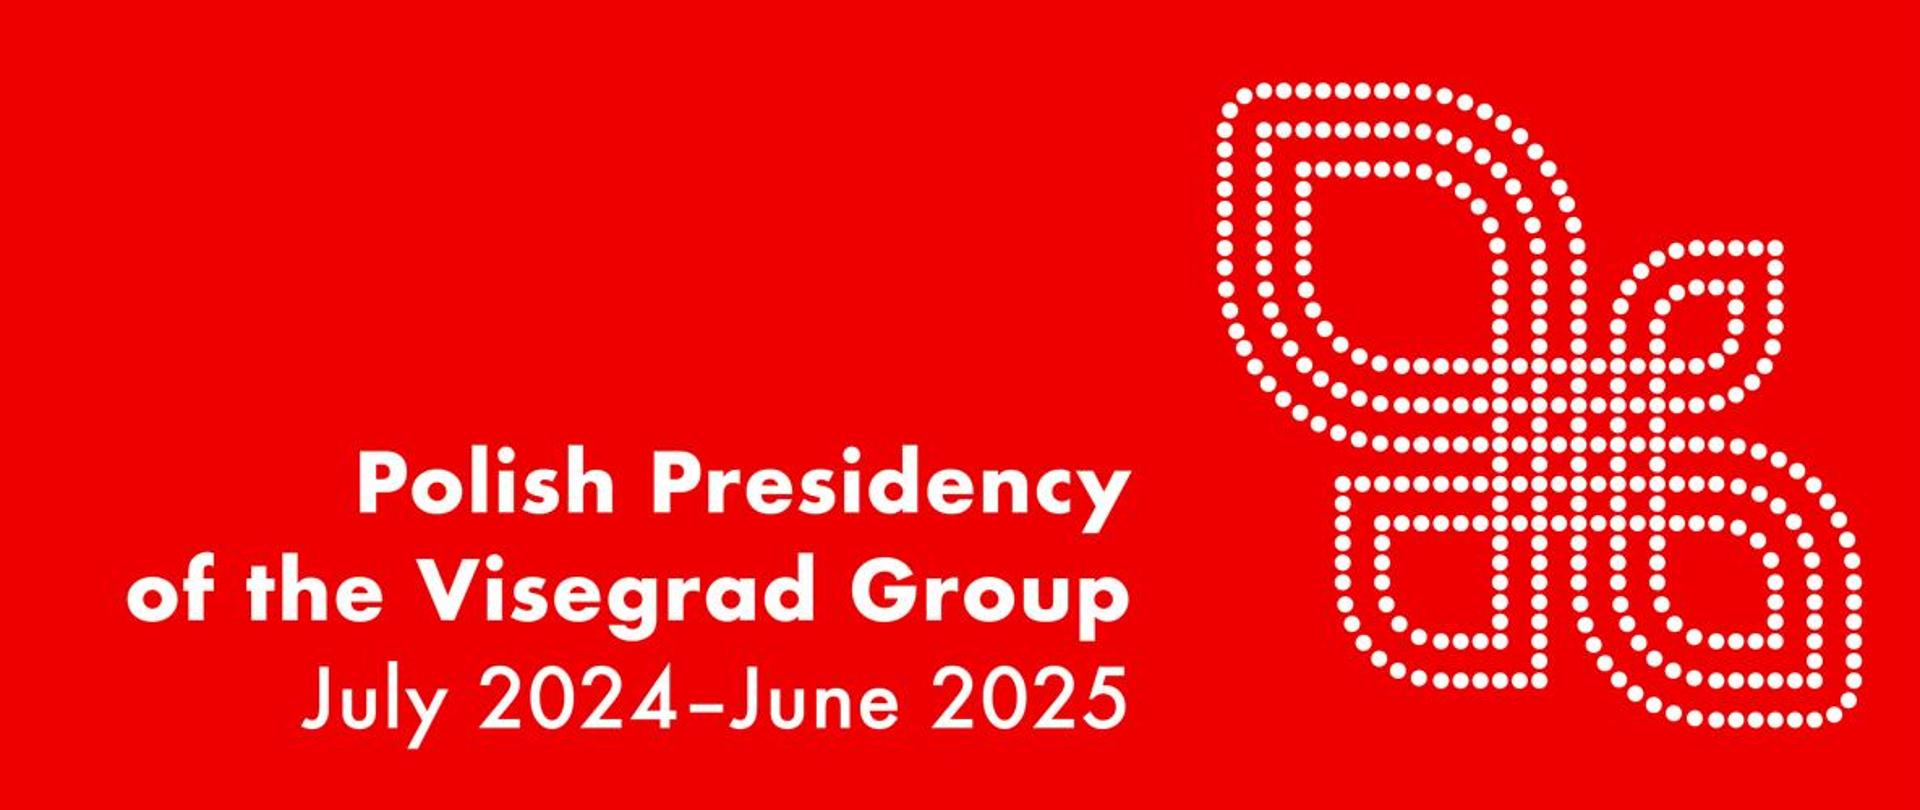 Polska prezydencja w Grupie Wyszehradzkiej 2024-2025